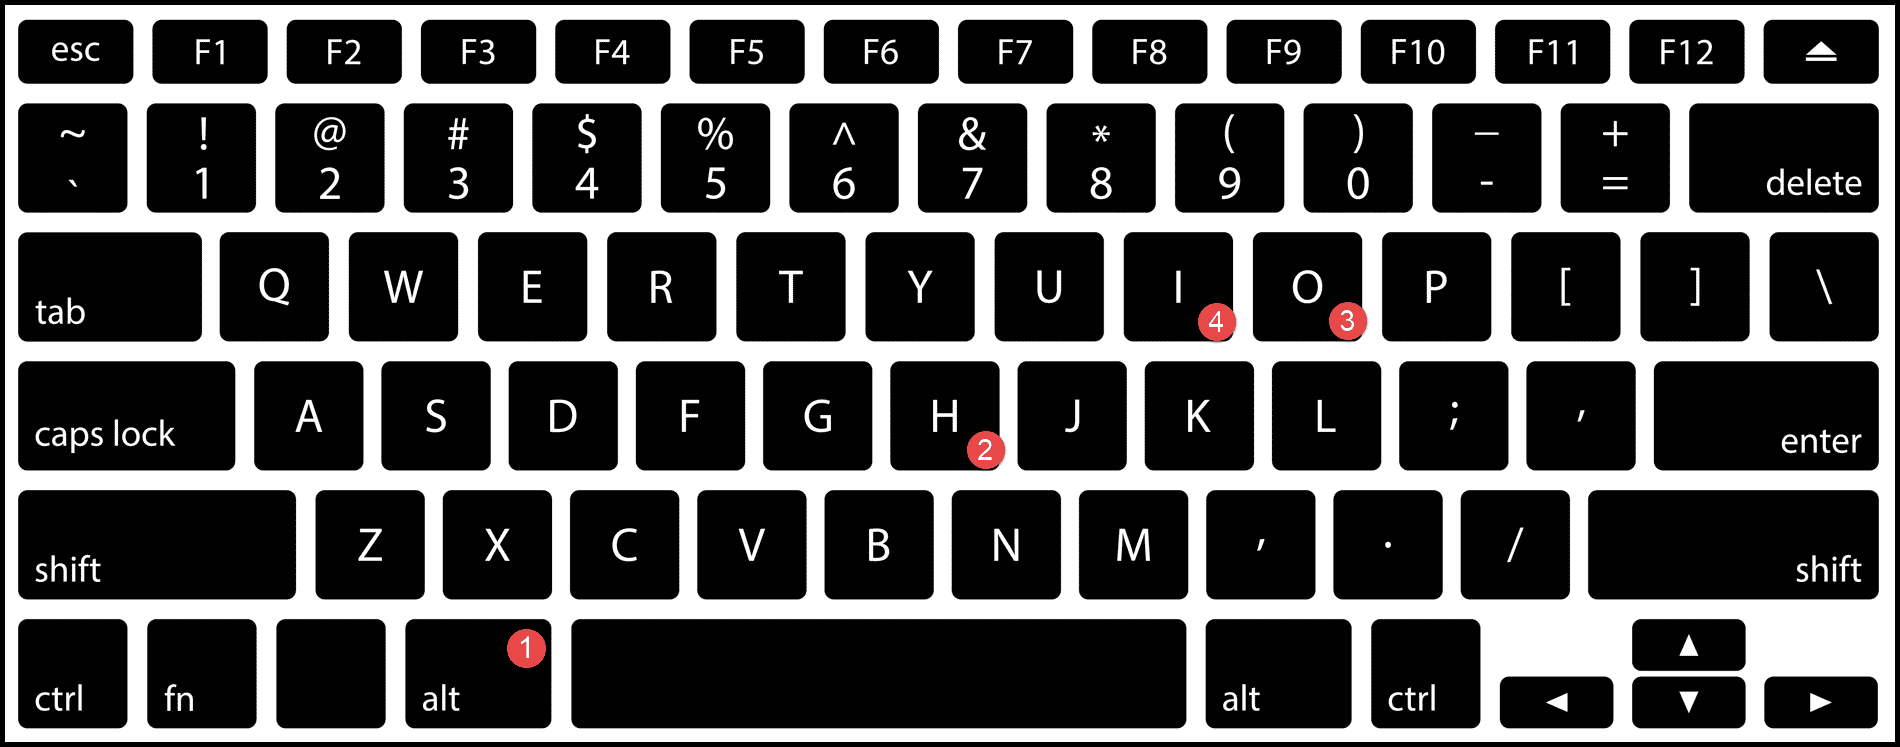 método abreviado de teclado para ajustar automáticamente el ancho de celda